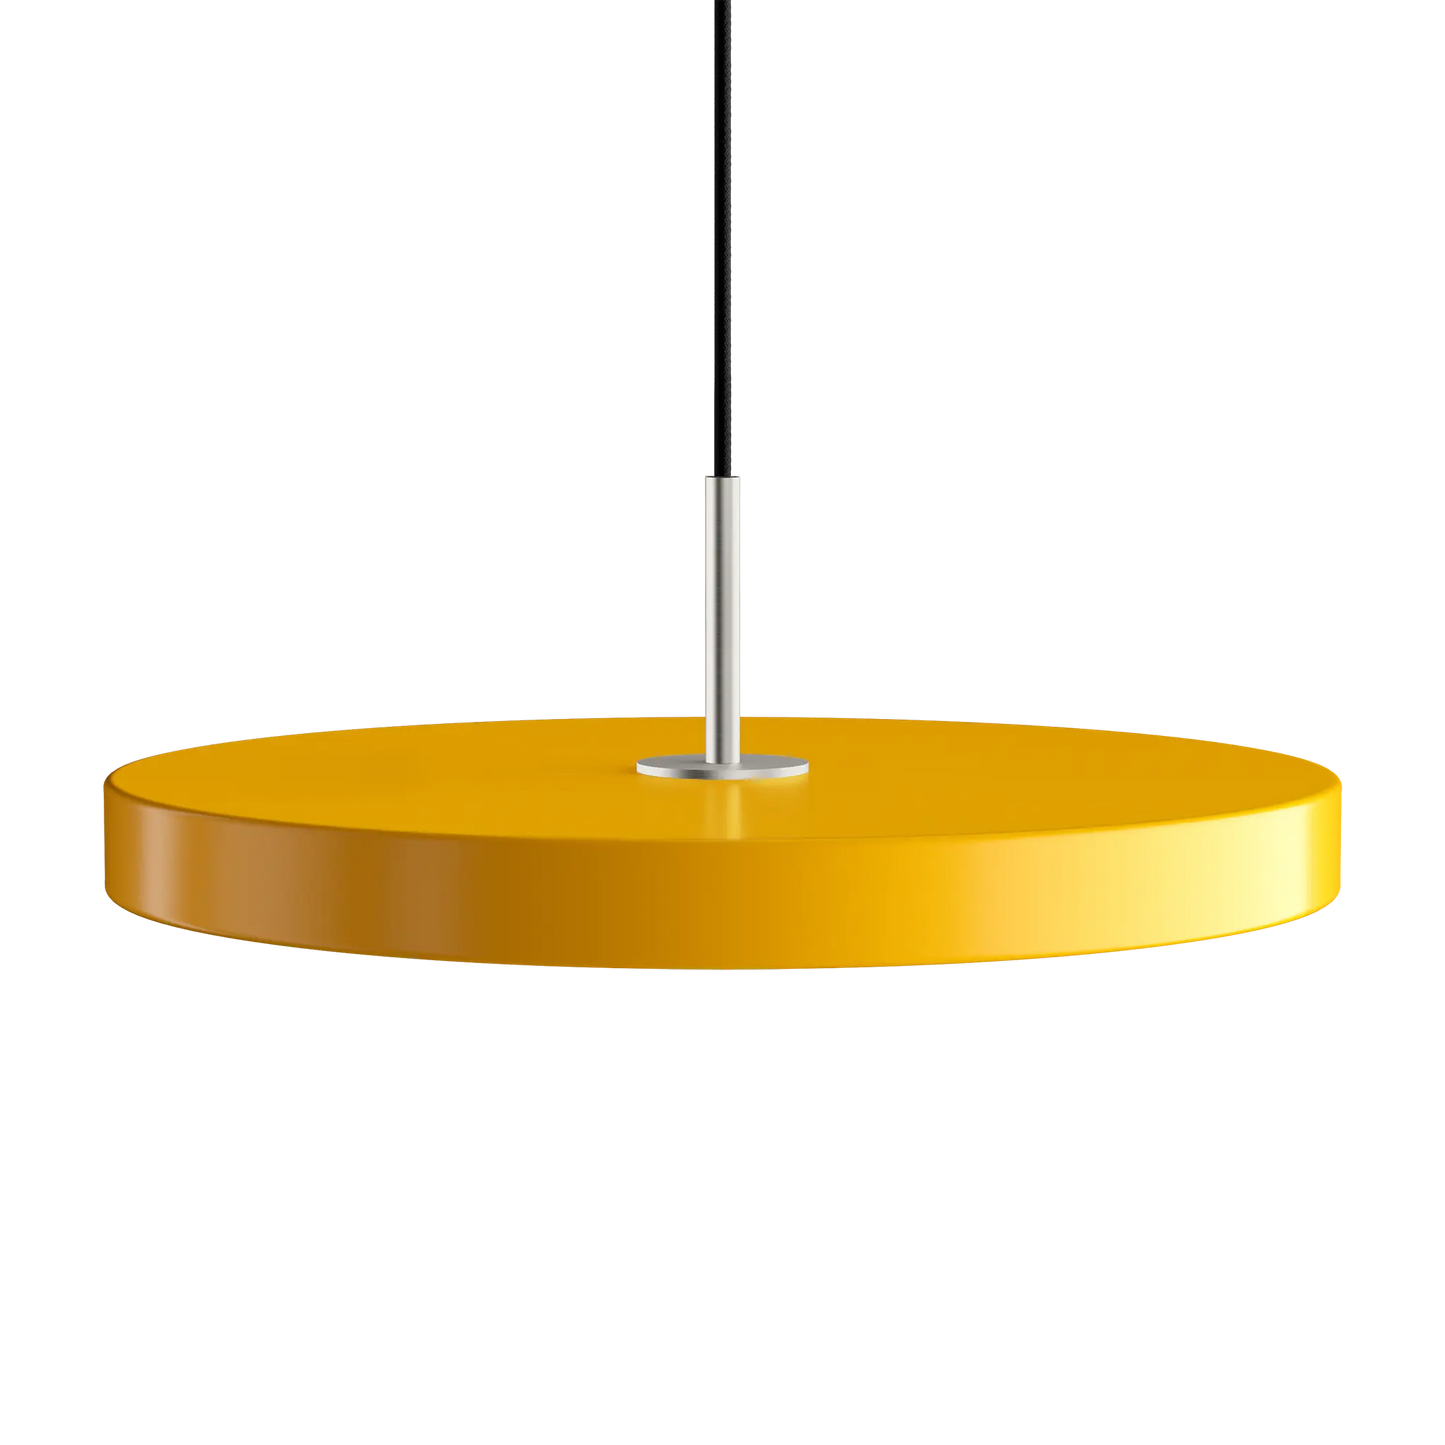 Asteria Medium taklampa med ståltop i färgen Saffron Yellow från Umage